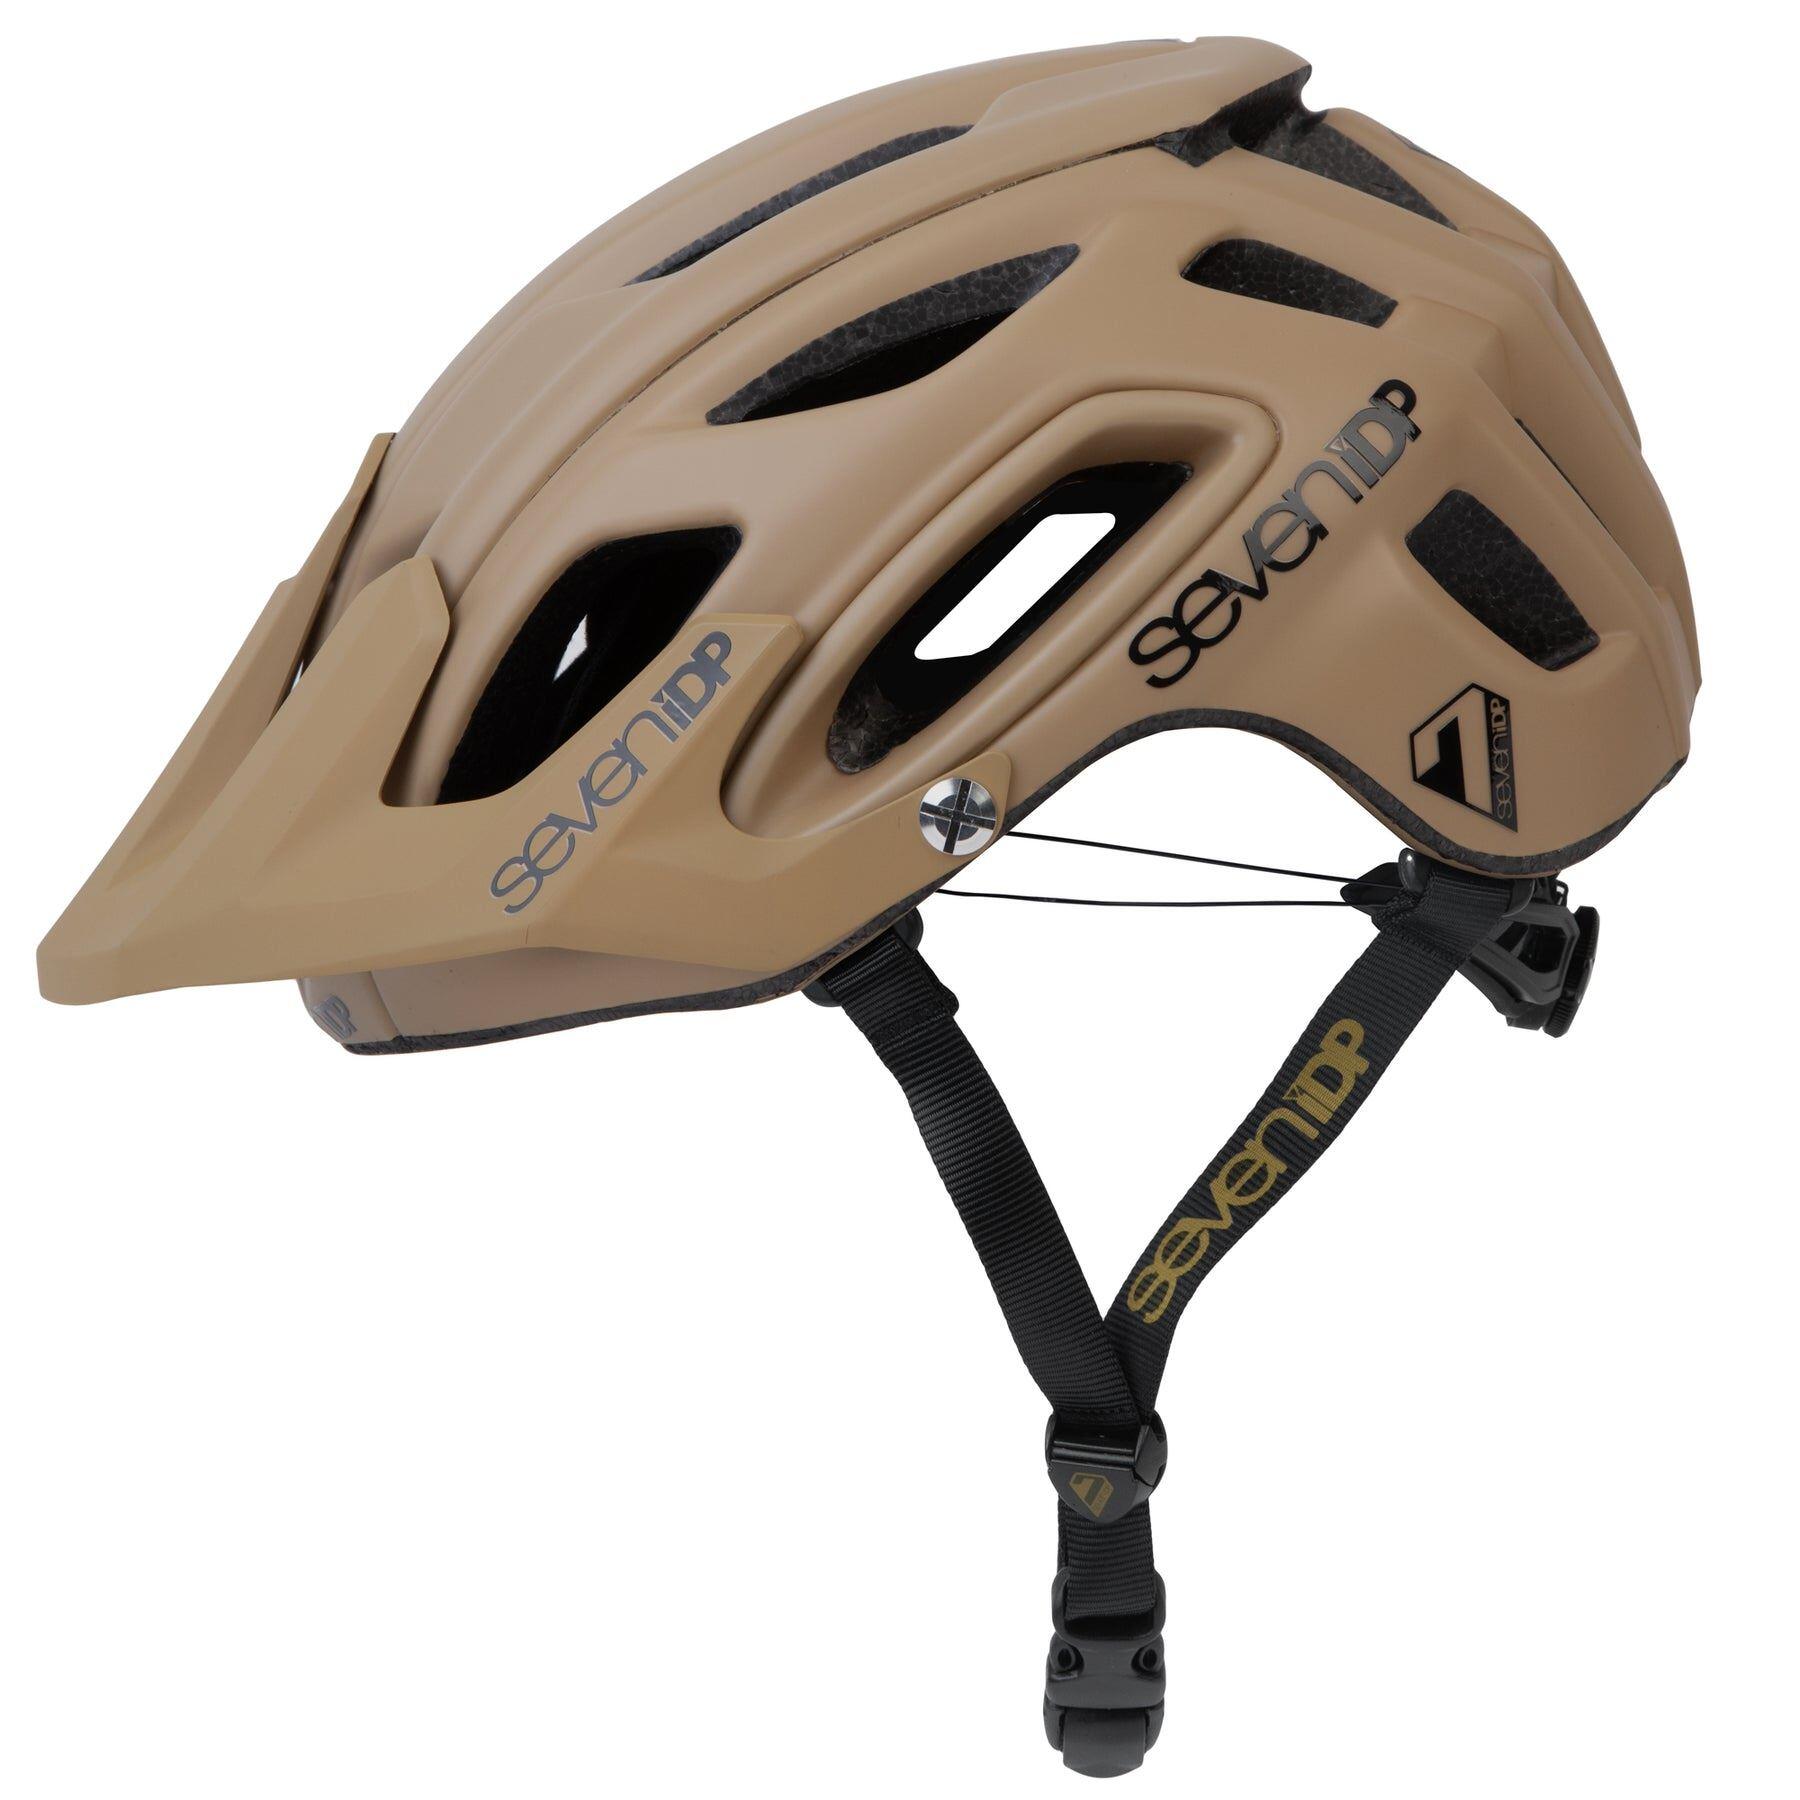 7iDP M2 BOA Helmet Sand - XS/S 52-55cm 1/2